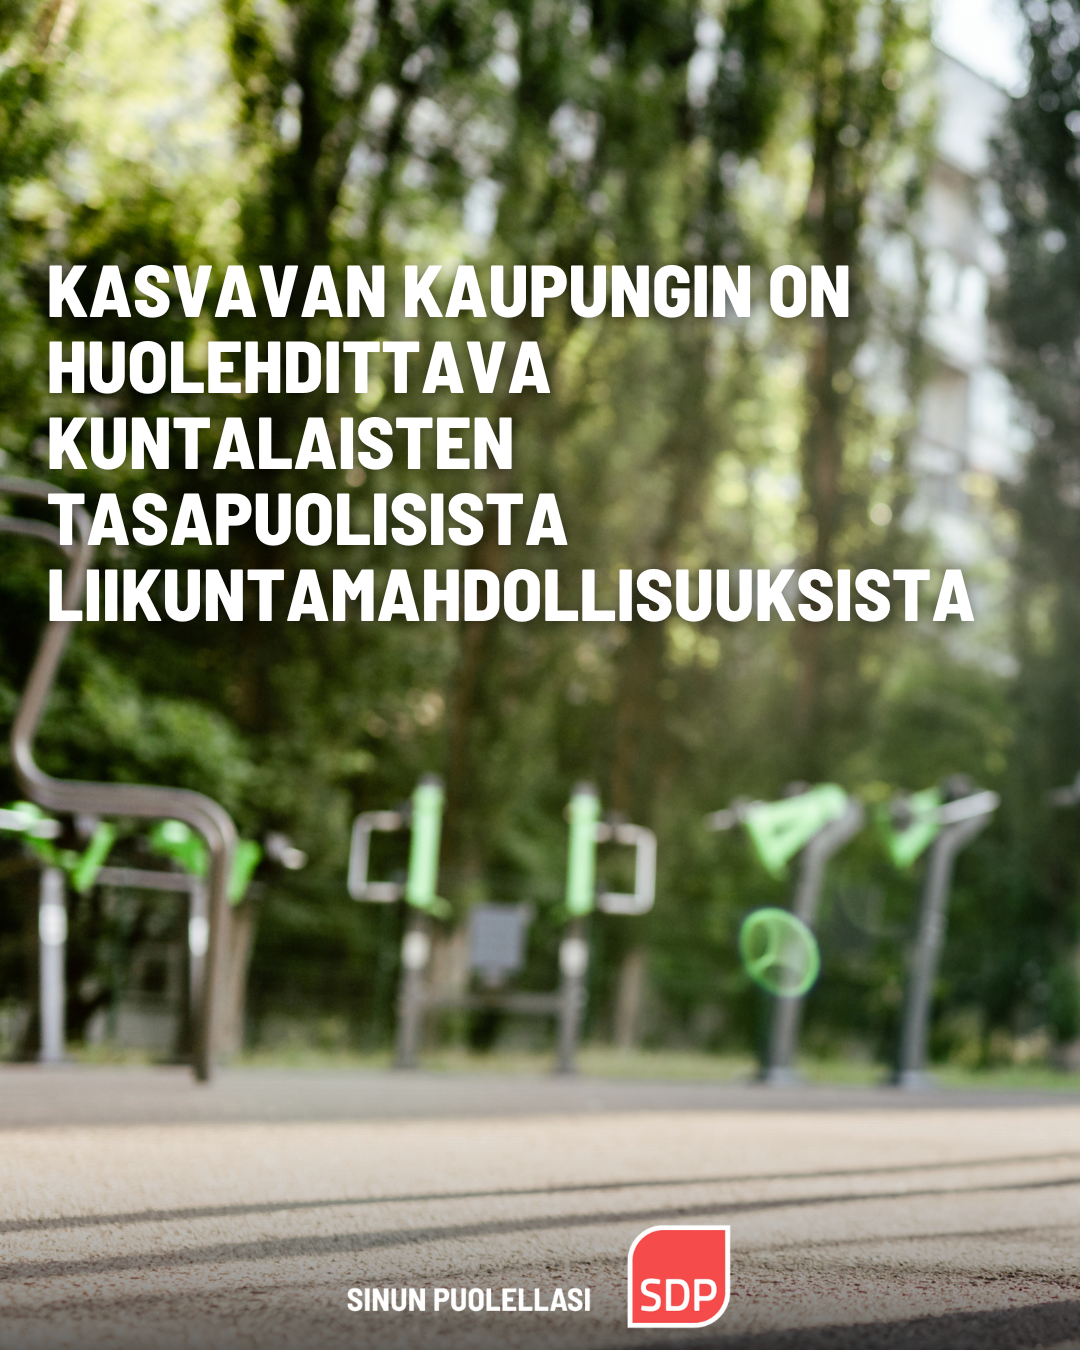 Turun SDP: Kasvavan kaupungin on huolehdittava kuntalaisten tasapuolisista liikuntamahdollisuuksista